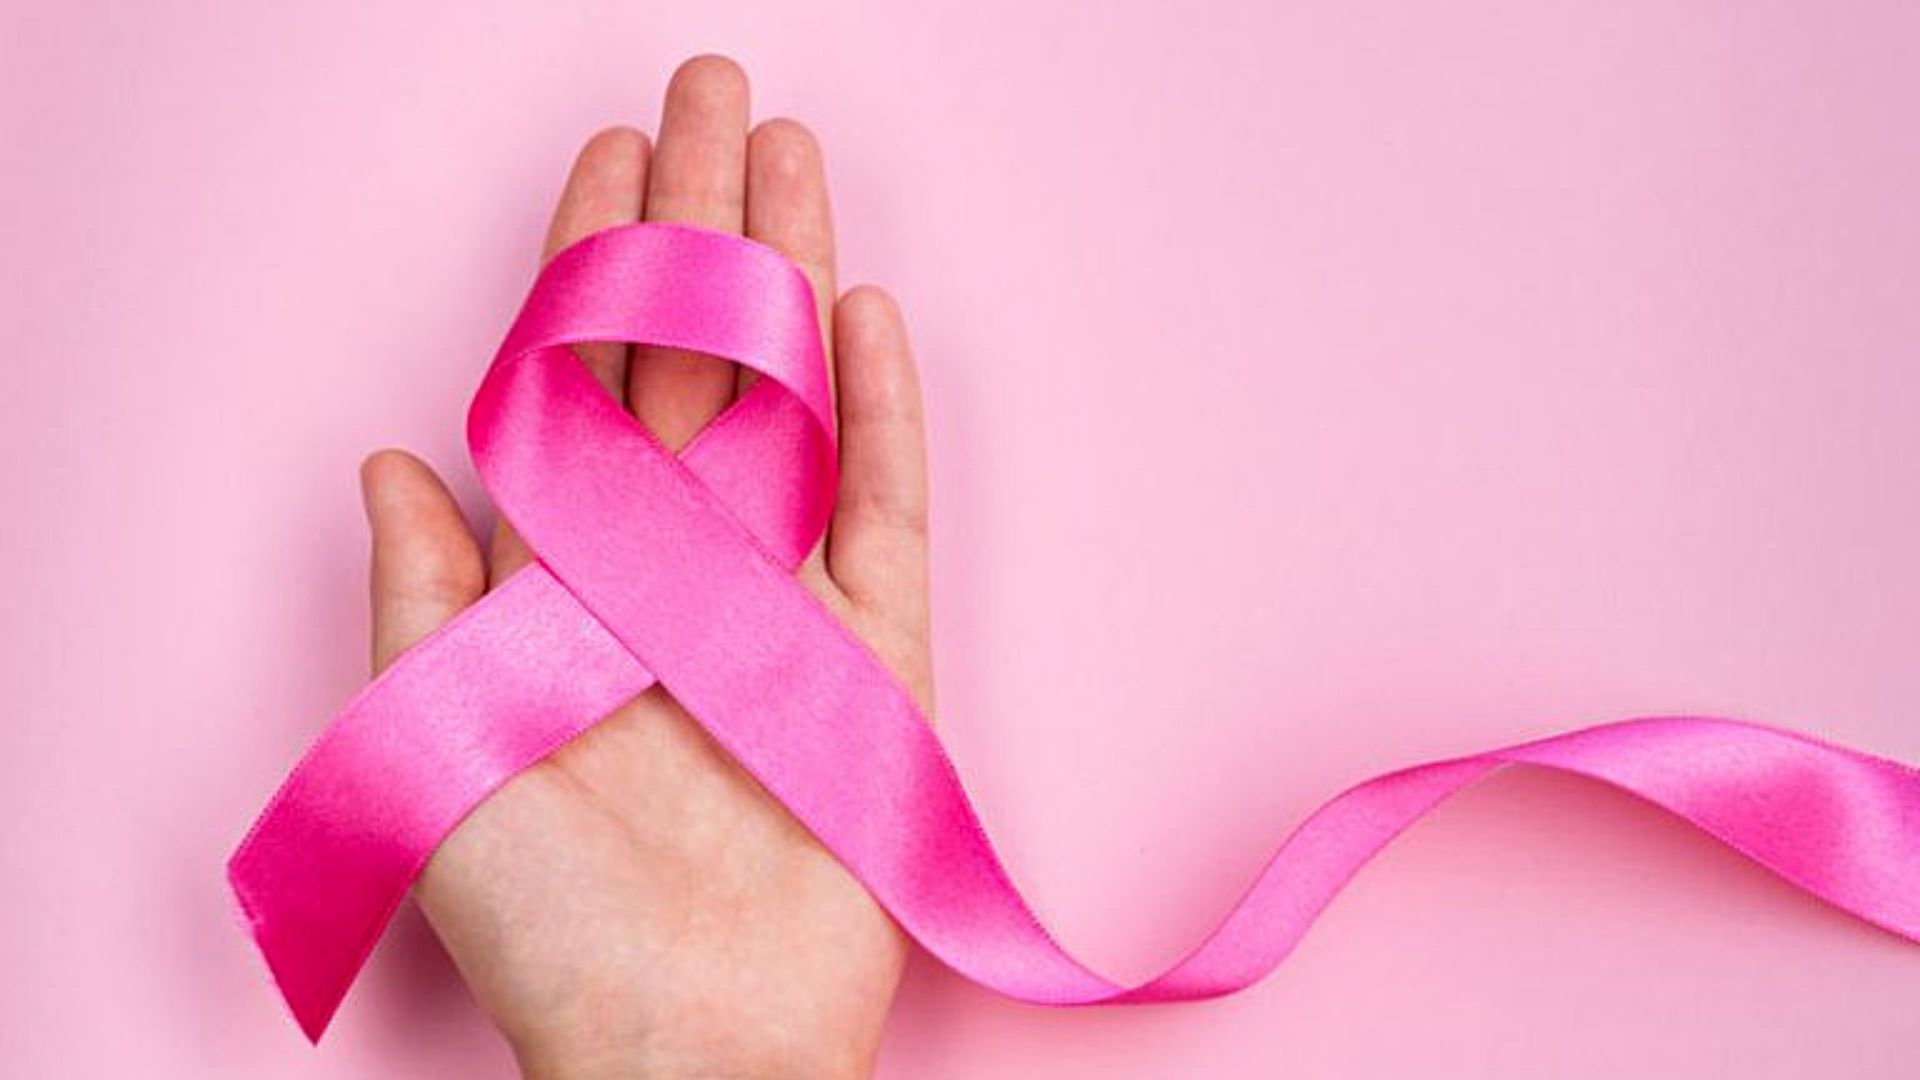 Según las estadísticas una cantidad importante de mujeres informó que el primer signo de cáncer de mama fue un nuevo bulto encontrado por ellas mismas 
(Andina)